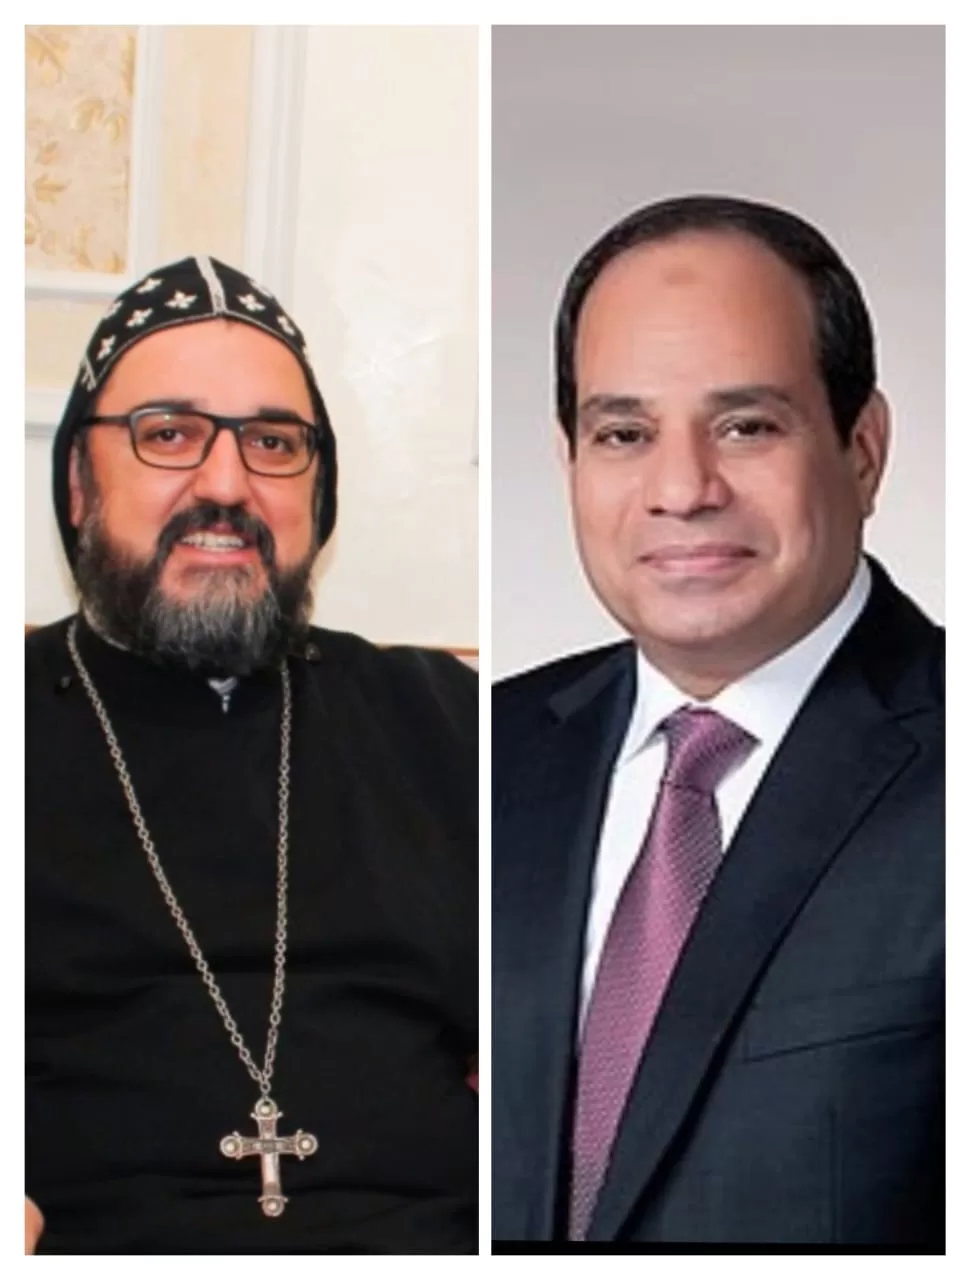 الكنيسة السريانية الأرثوذكسية في مصر تهنئ فخامة رئيس الجمهورية لتوليه فترة رئاسية جديدة